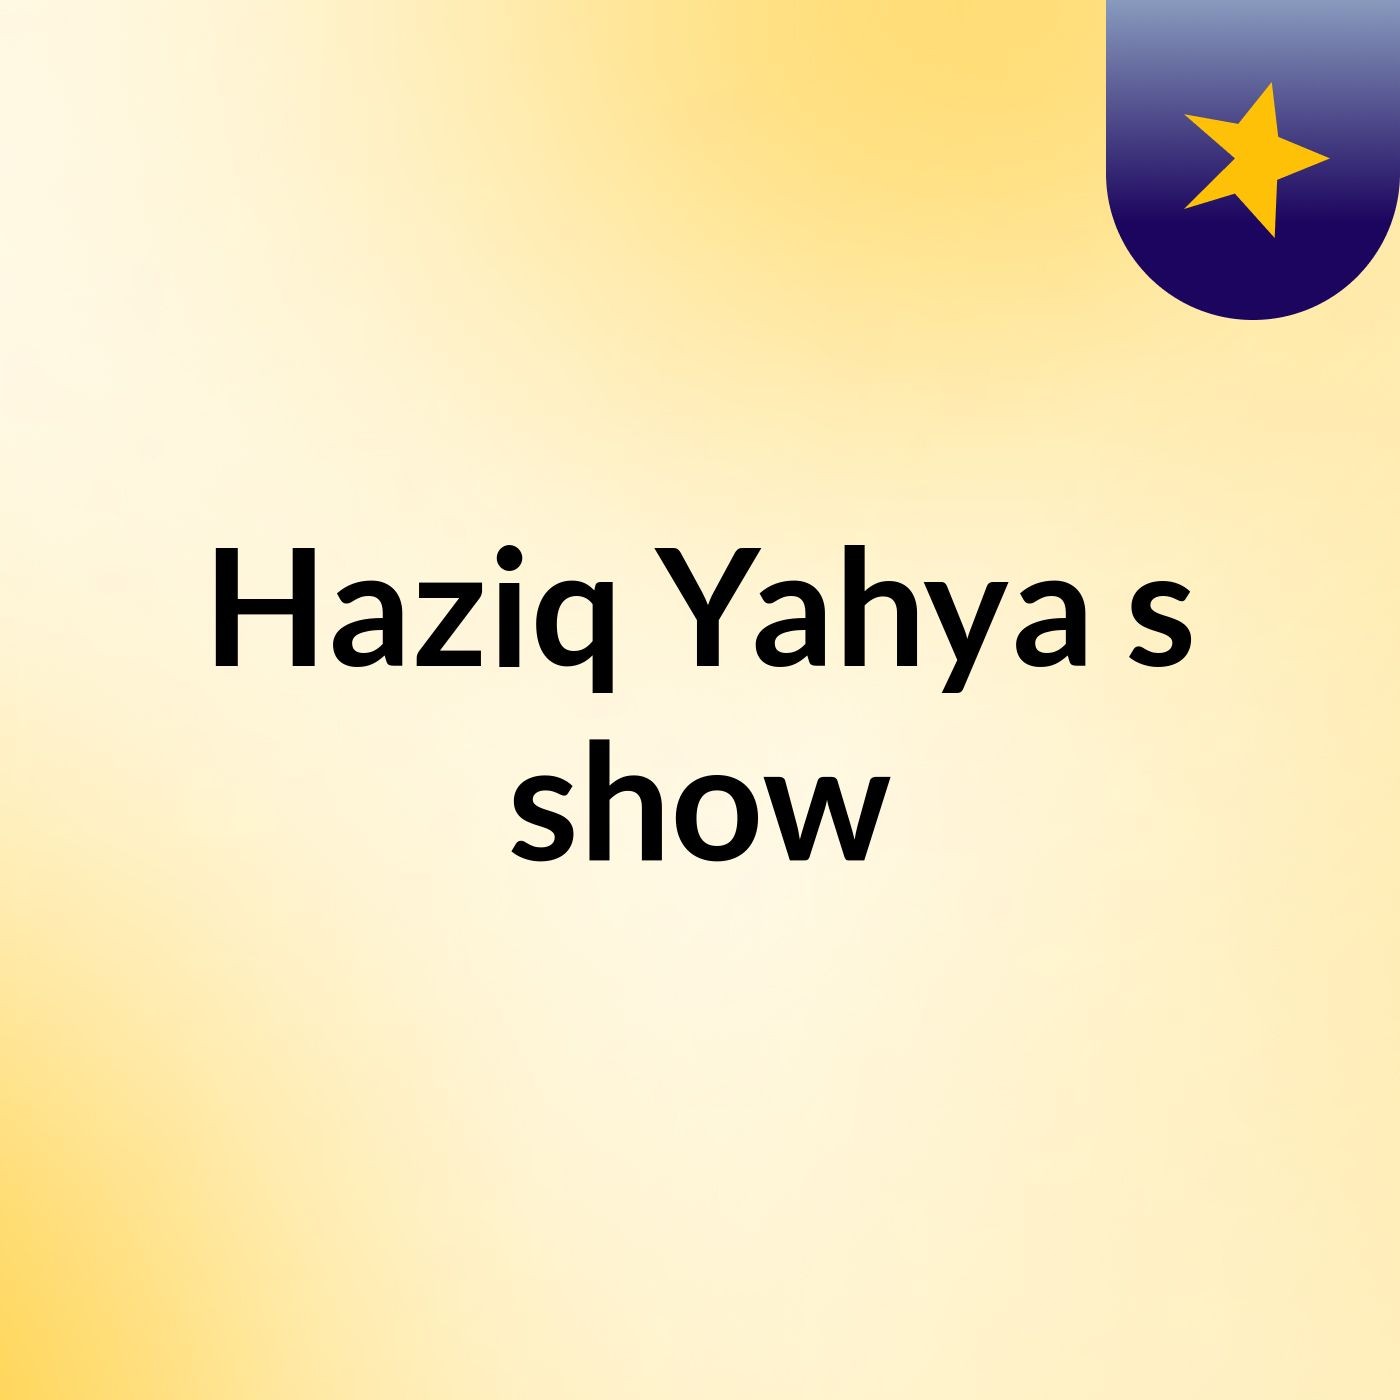 Haziq Yahya's show